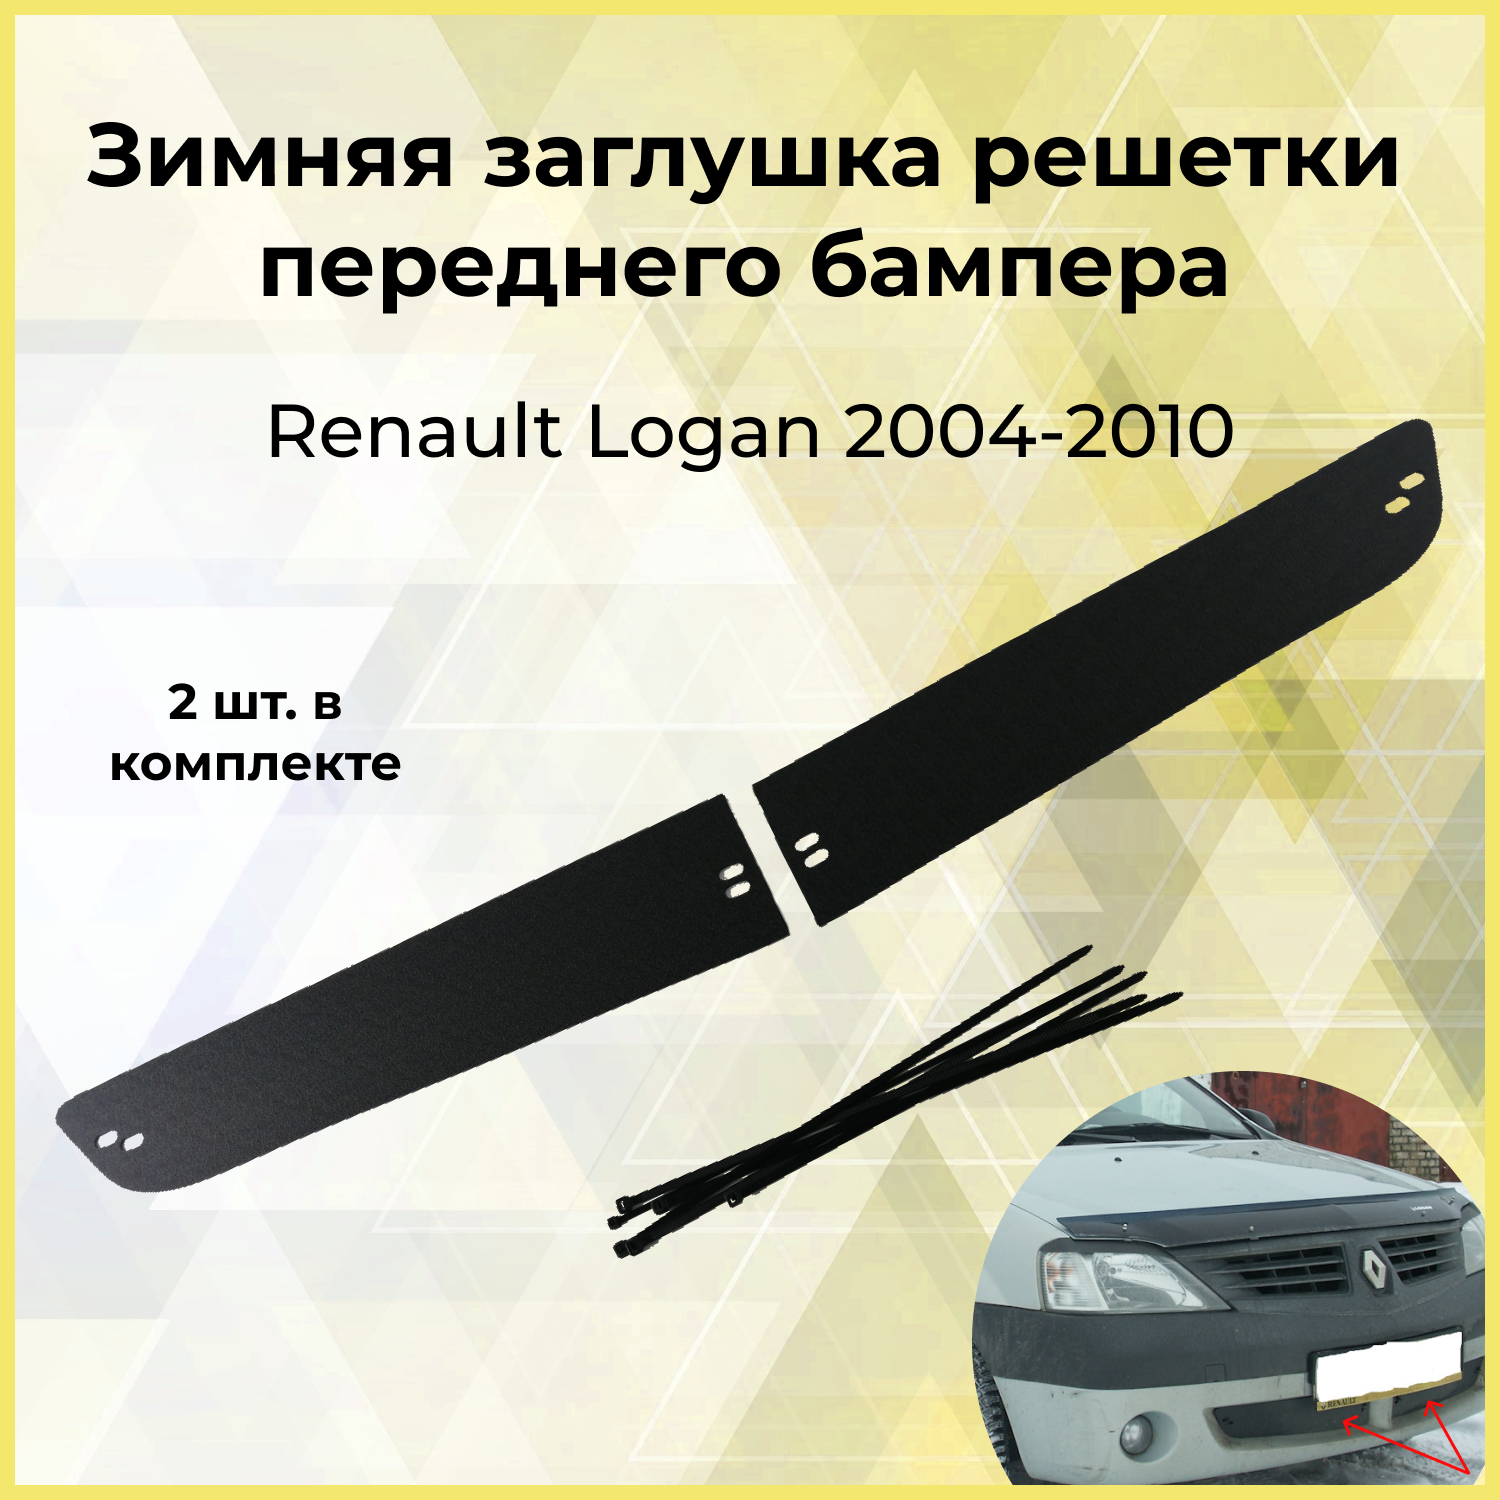 Зимняя заглушка решетки переднего бампера Renault Logan 2004-2010